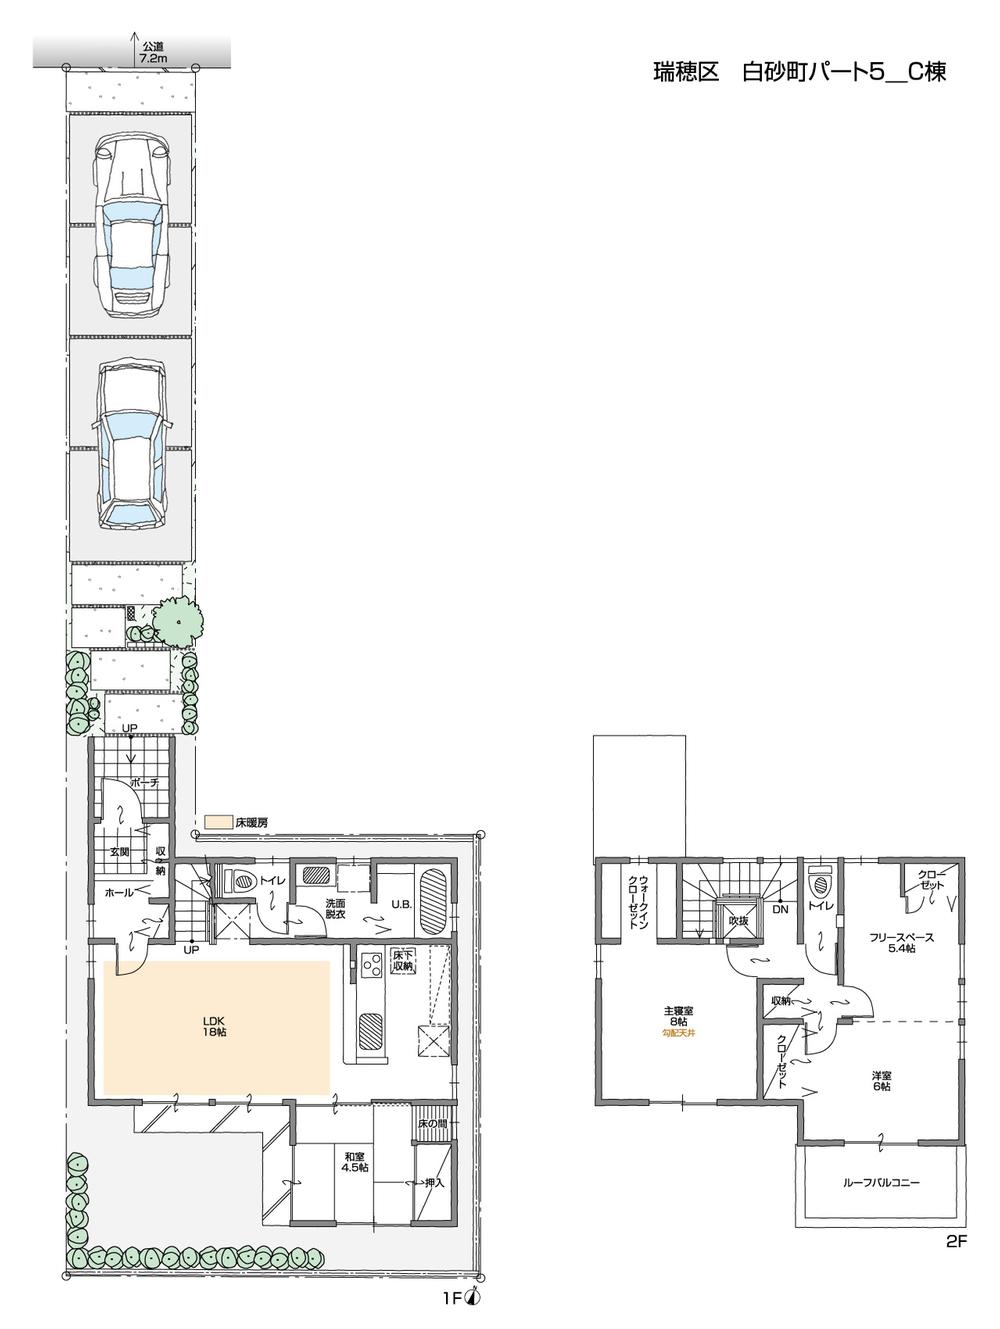 Floor plan. 38,500,000 yen, 3LDK + S (storeroom), Land area 143.44 sq m , Building area 103.53 sq m